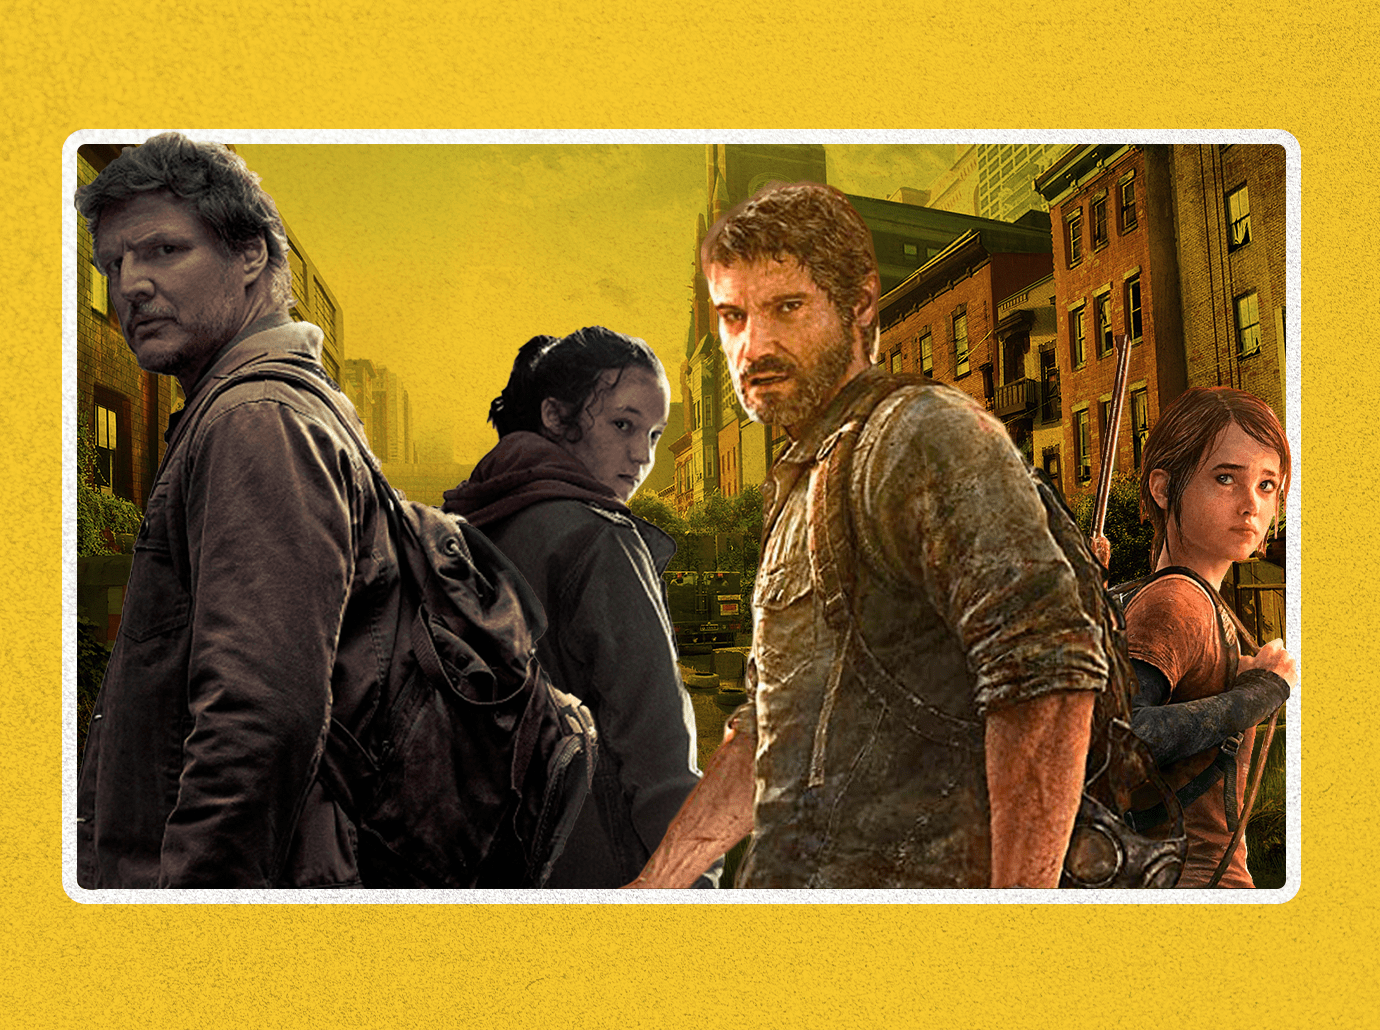 Mais recorde! The Last of Us tem a maior estreia da HBO Max na América  Latina